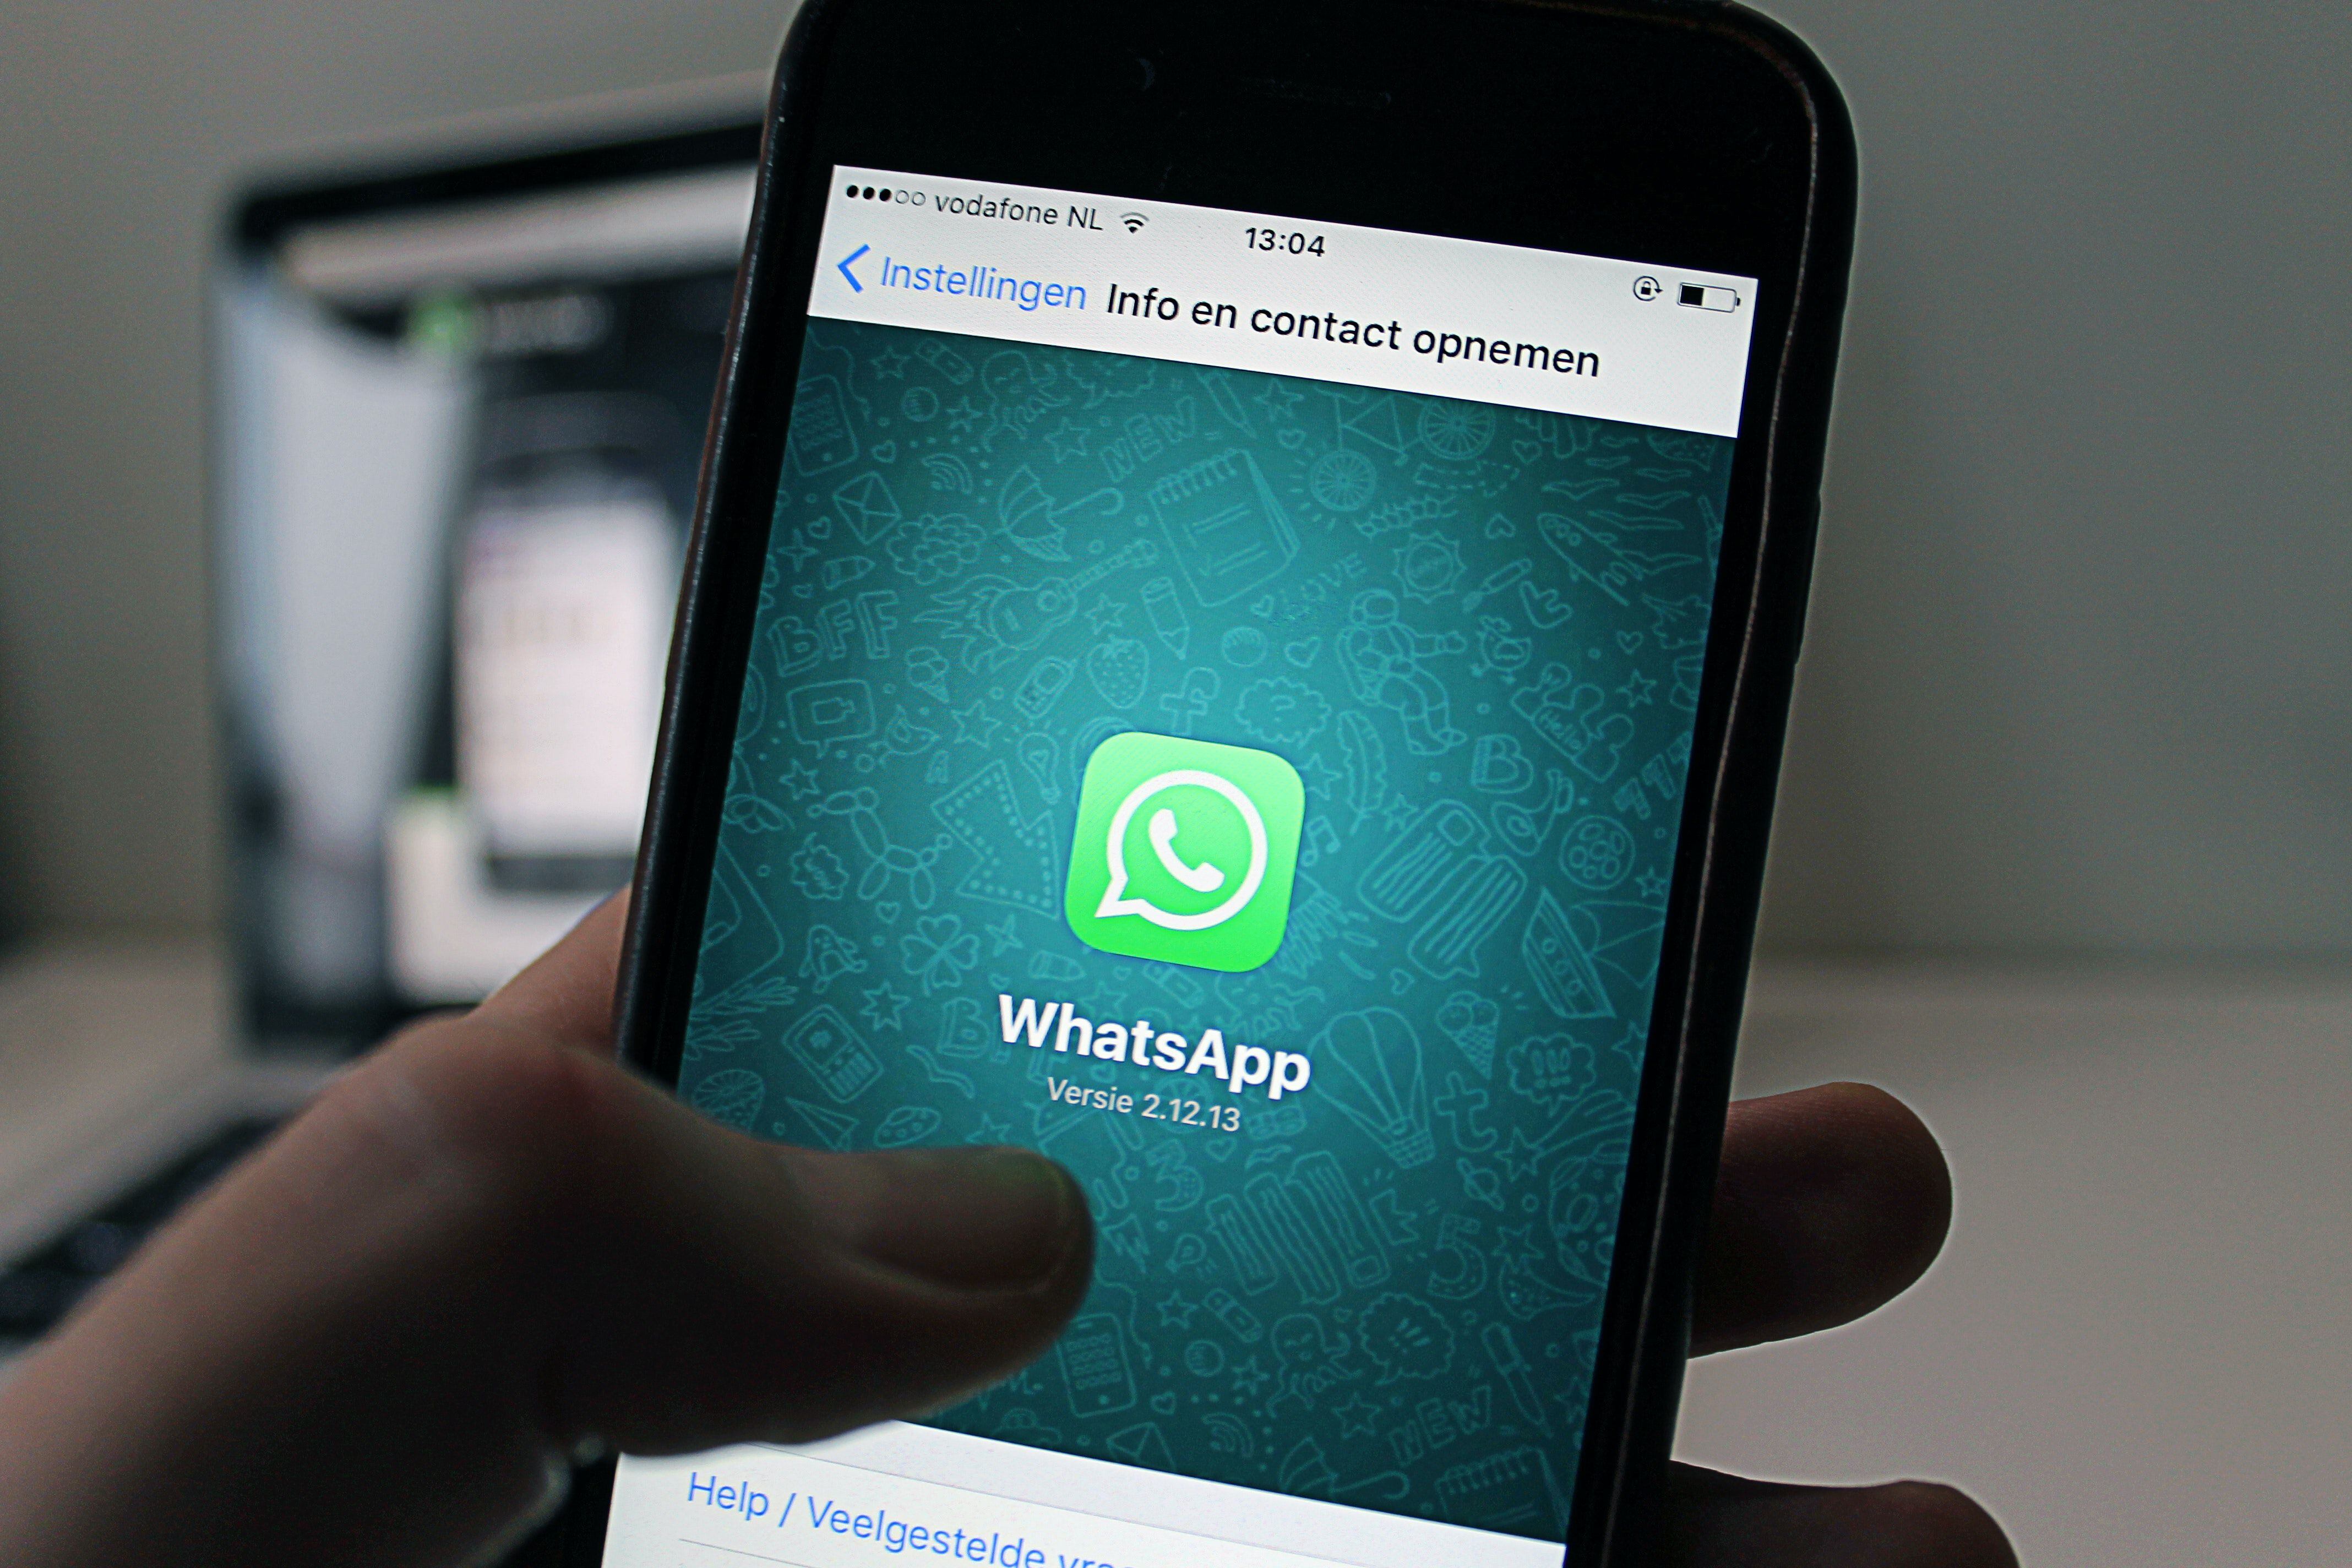 WhatsApp alberga la corona de las apps de comunicación por su cómoda interfaz y eficiencia. Foto: Pexels